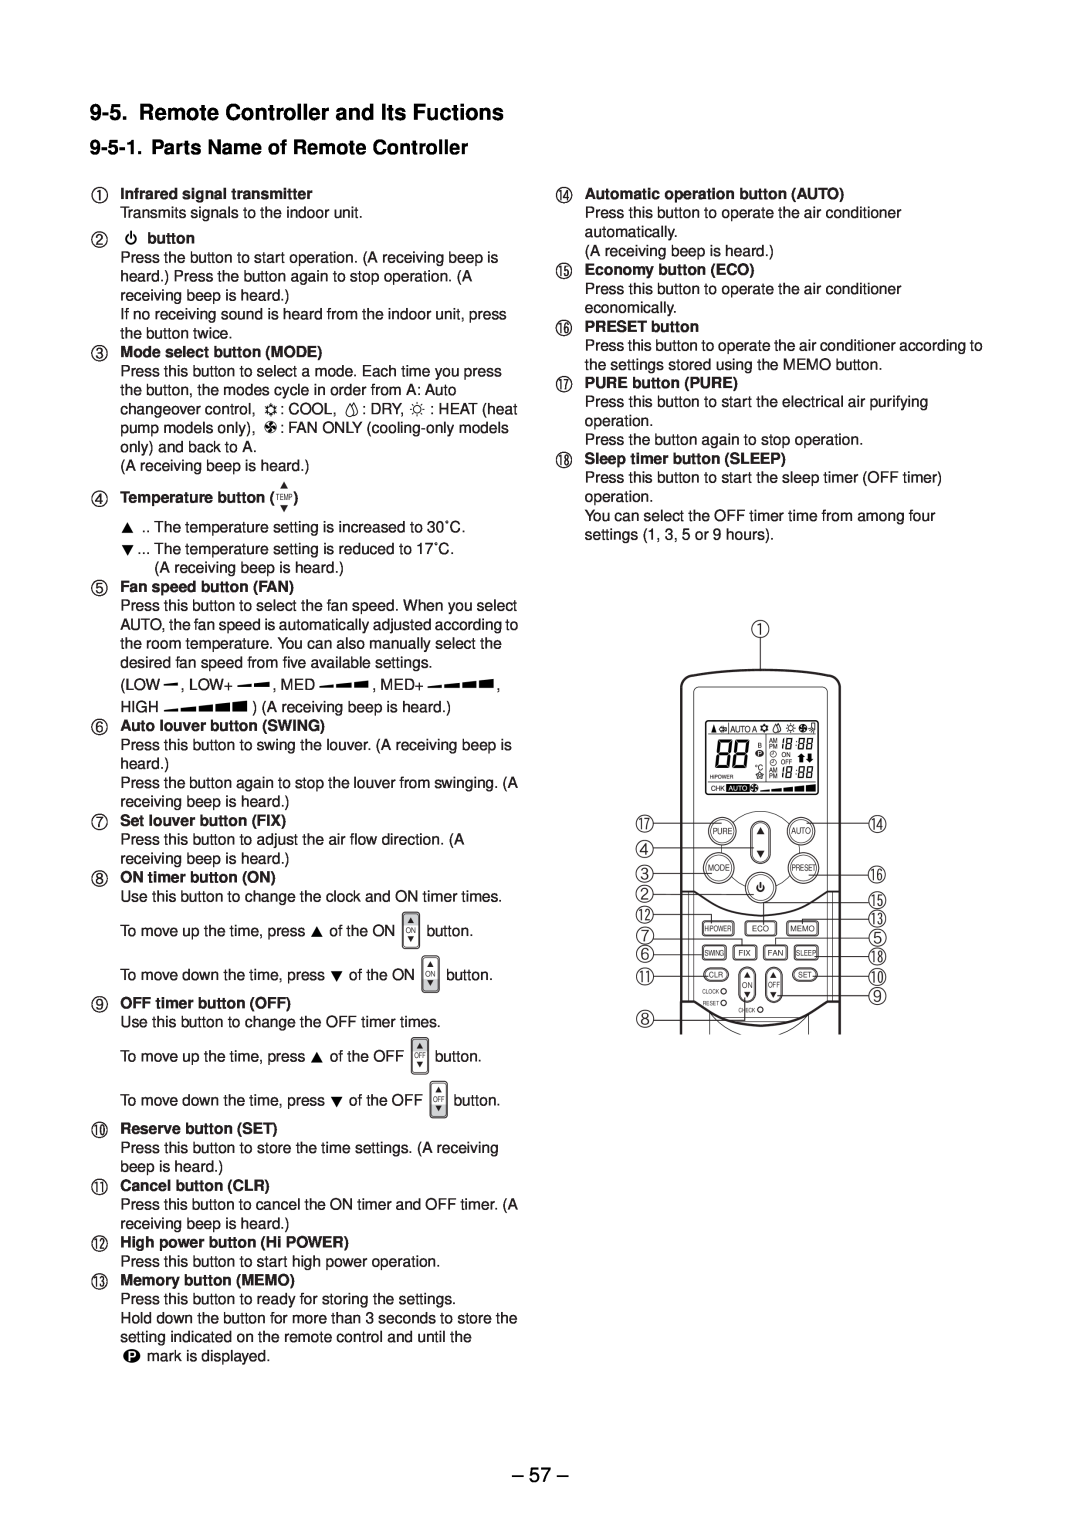 Toshiba RAS-M16EKCVP-E, RAS-M13EKCVP-E Remote Controller and Its Fuctions, Parts Name of Remote Controller, 57 